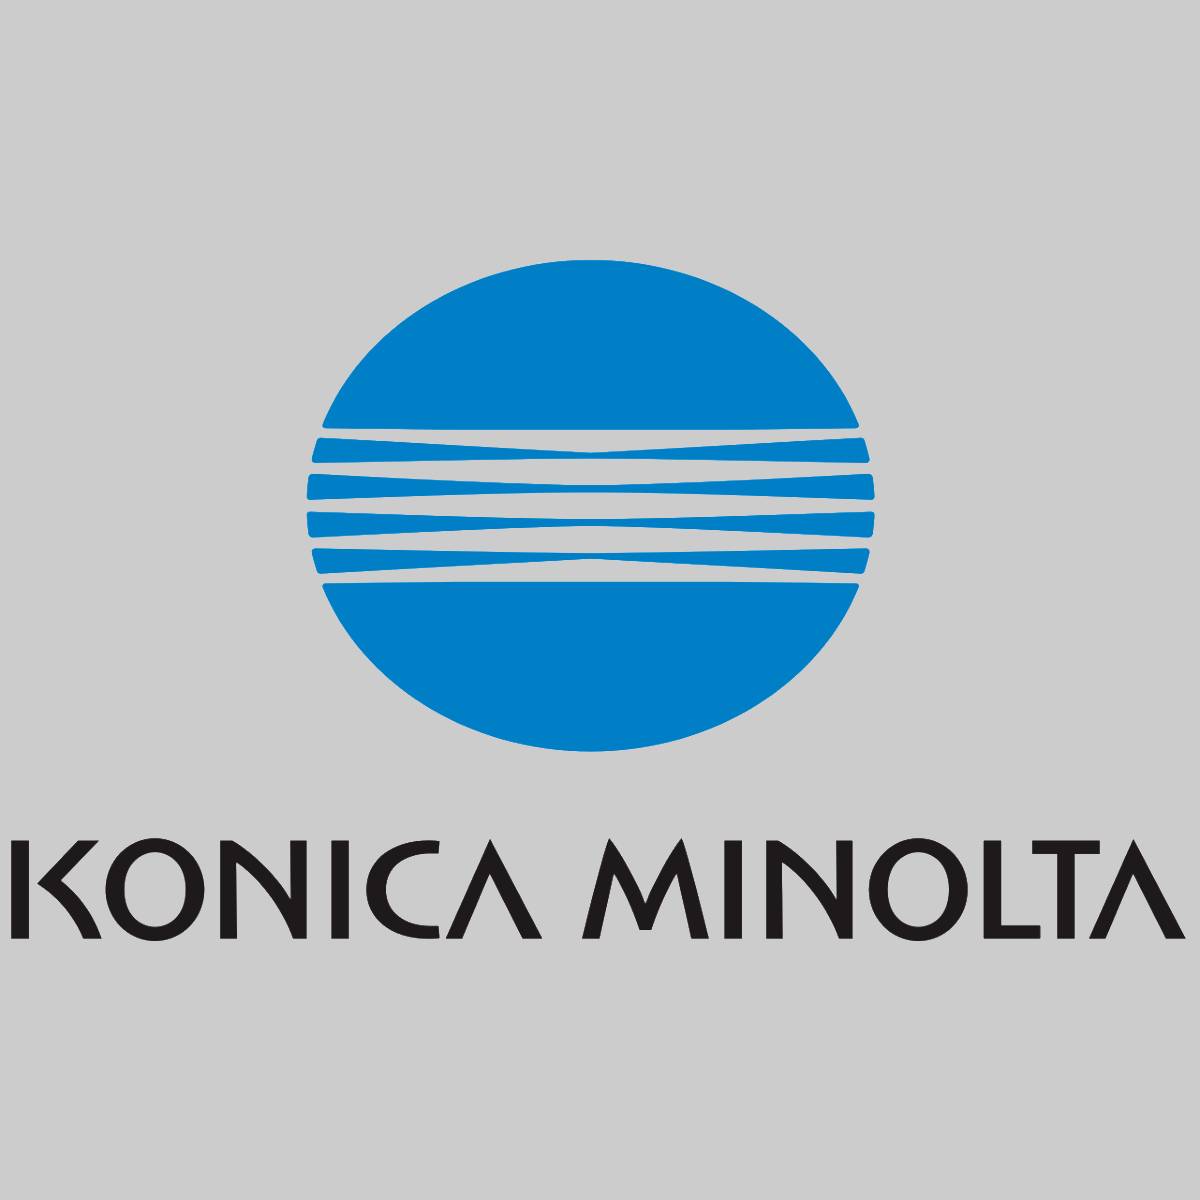 Konica Minolta 022B / DV910 Ontwikkelaar Zwart voor Bizhub Pro 920 950